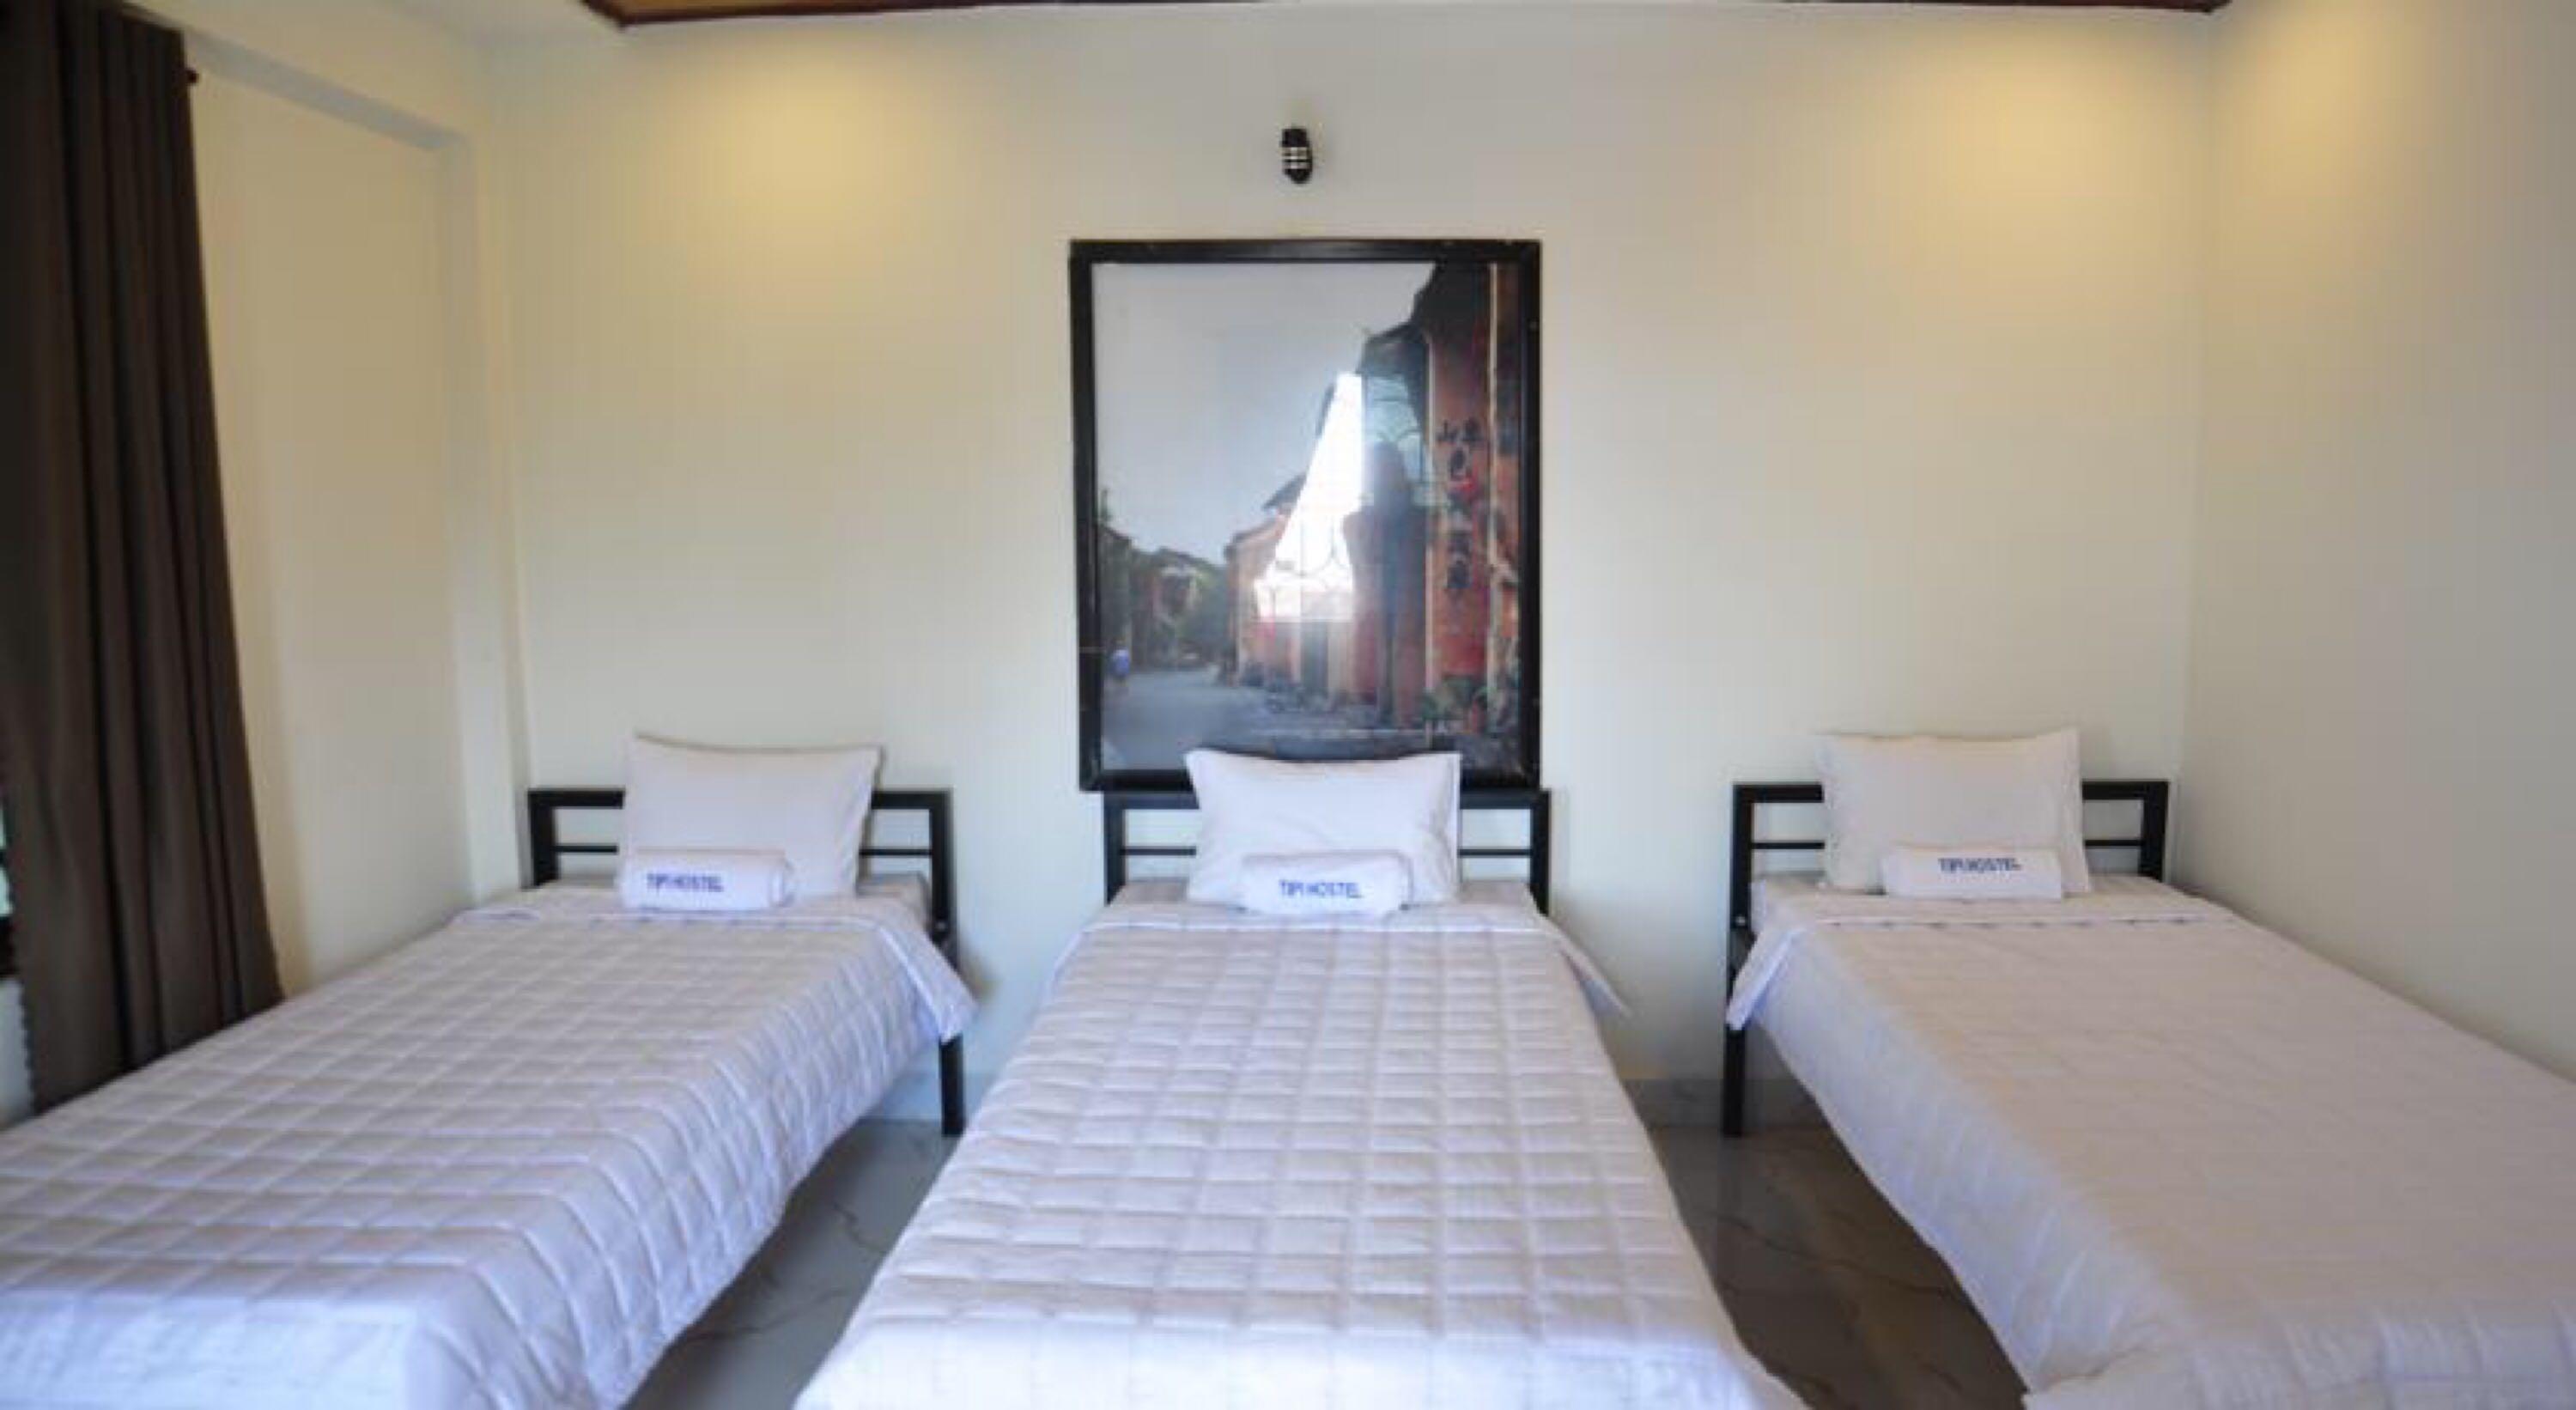 Tipi Hostel Hoi An - Évaluations de l'hôtel étoiles à Hội An